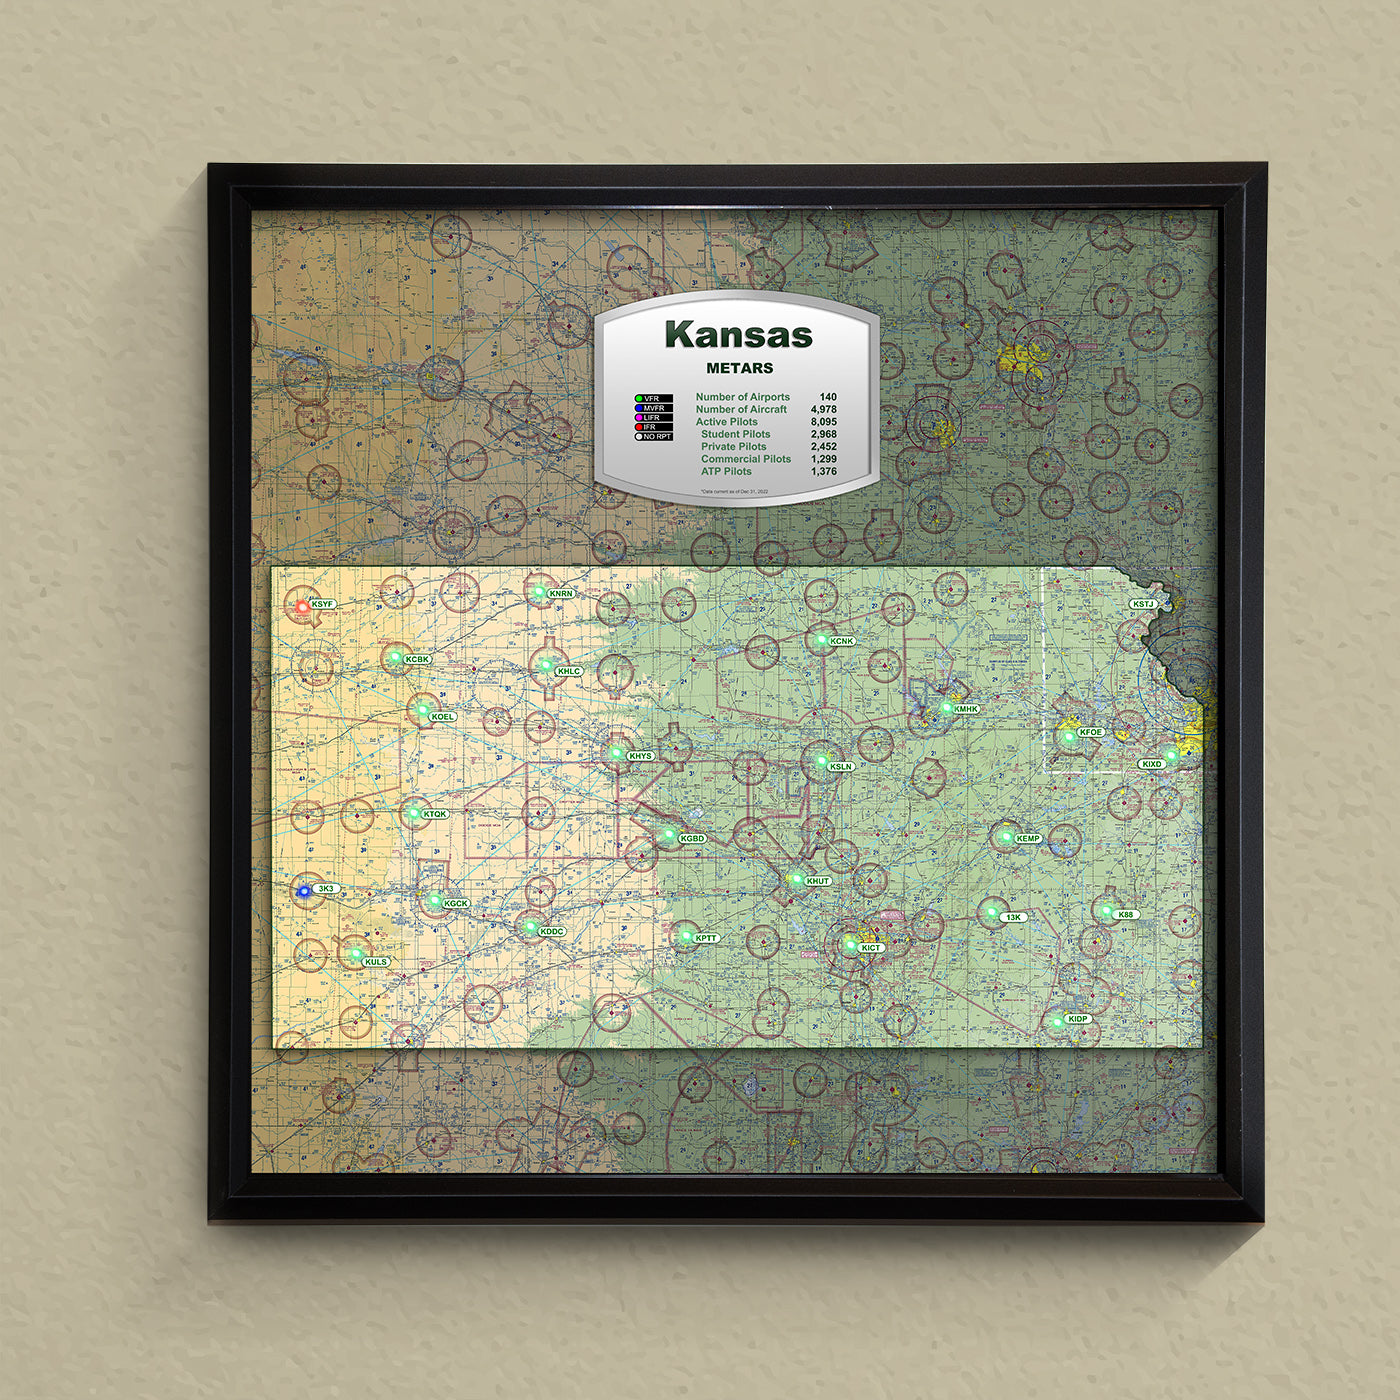 State METAR Map - Kansas